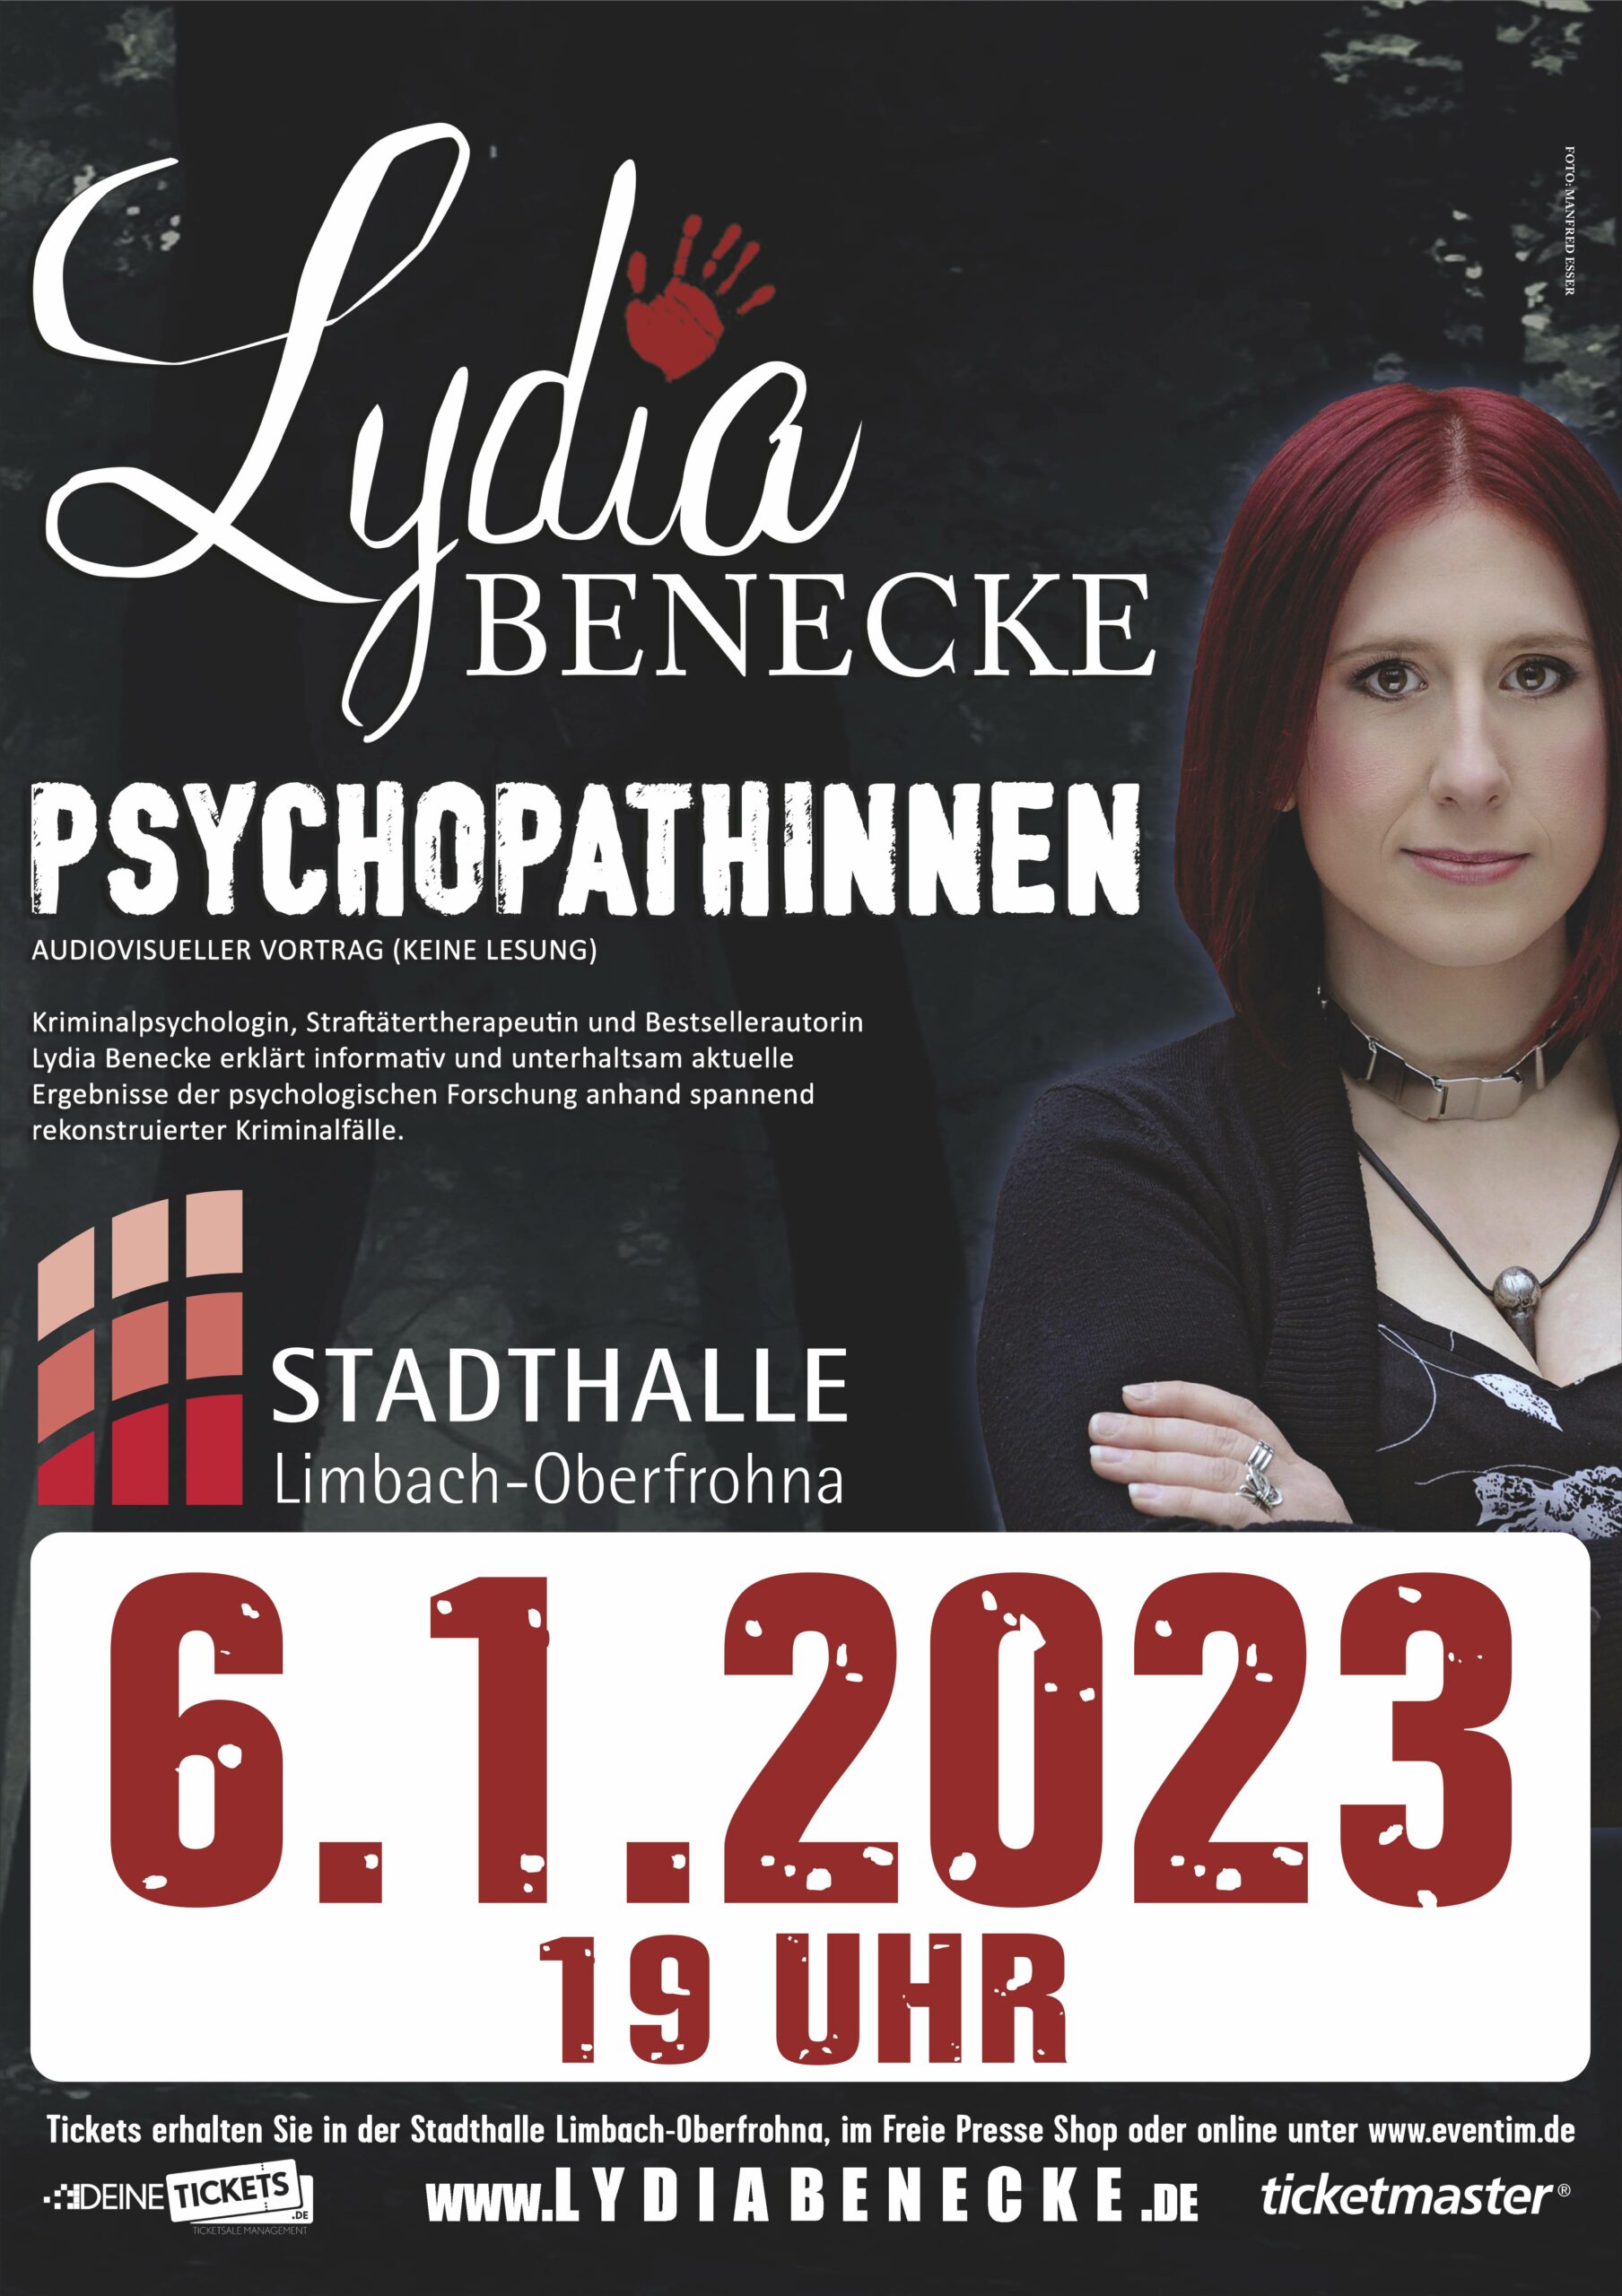 PsychopathINNEN von Lydia Benecke